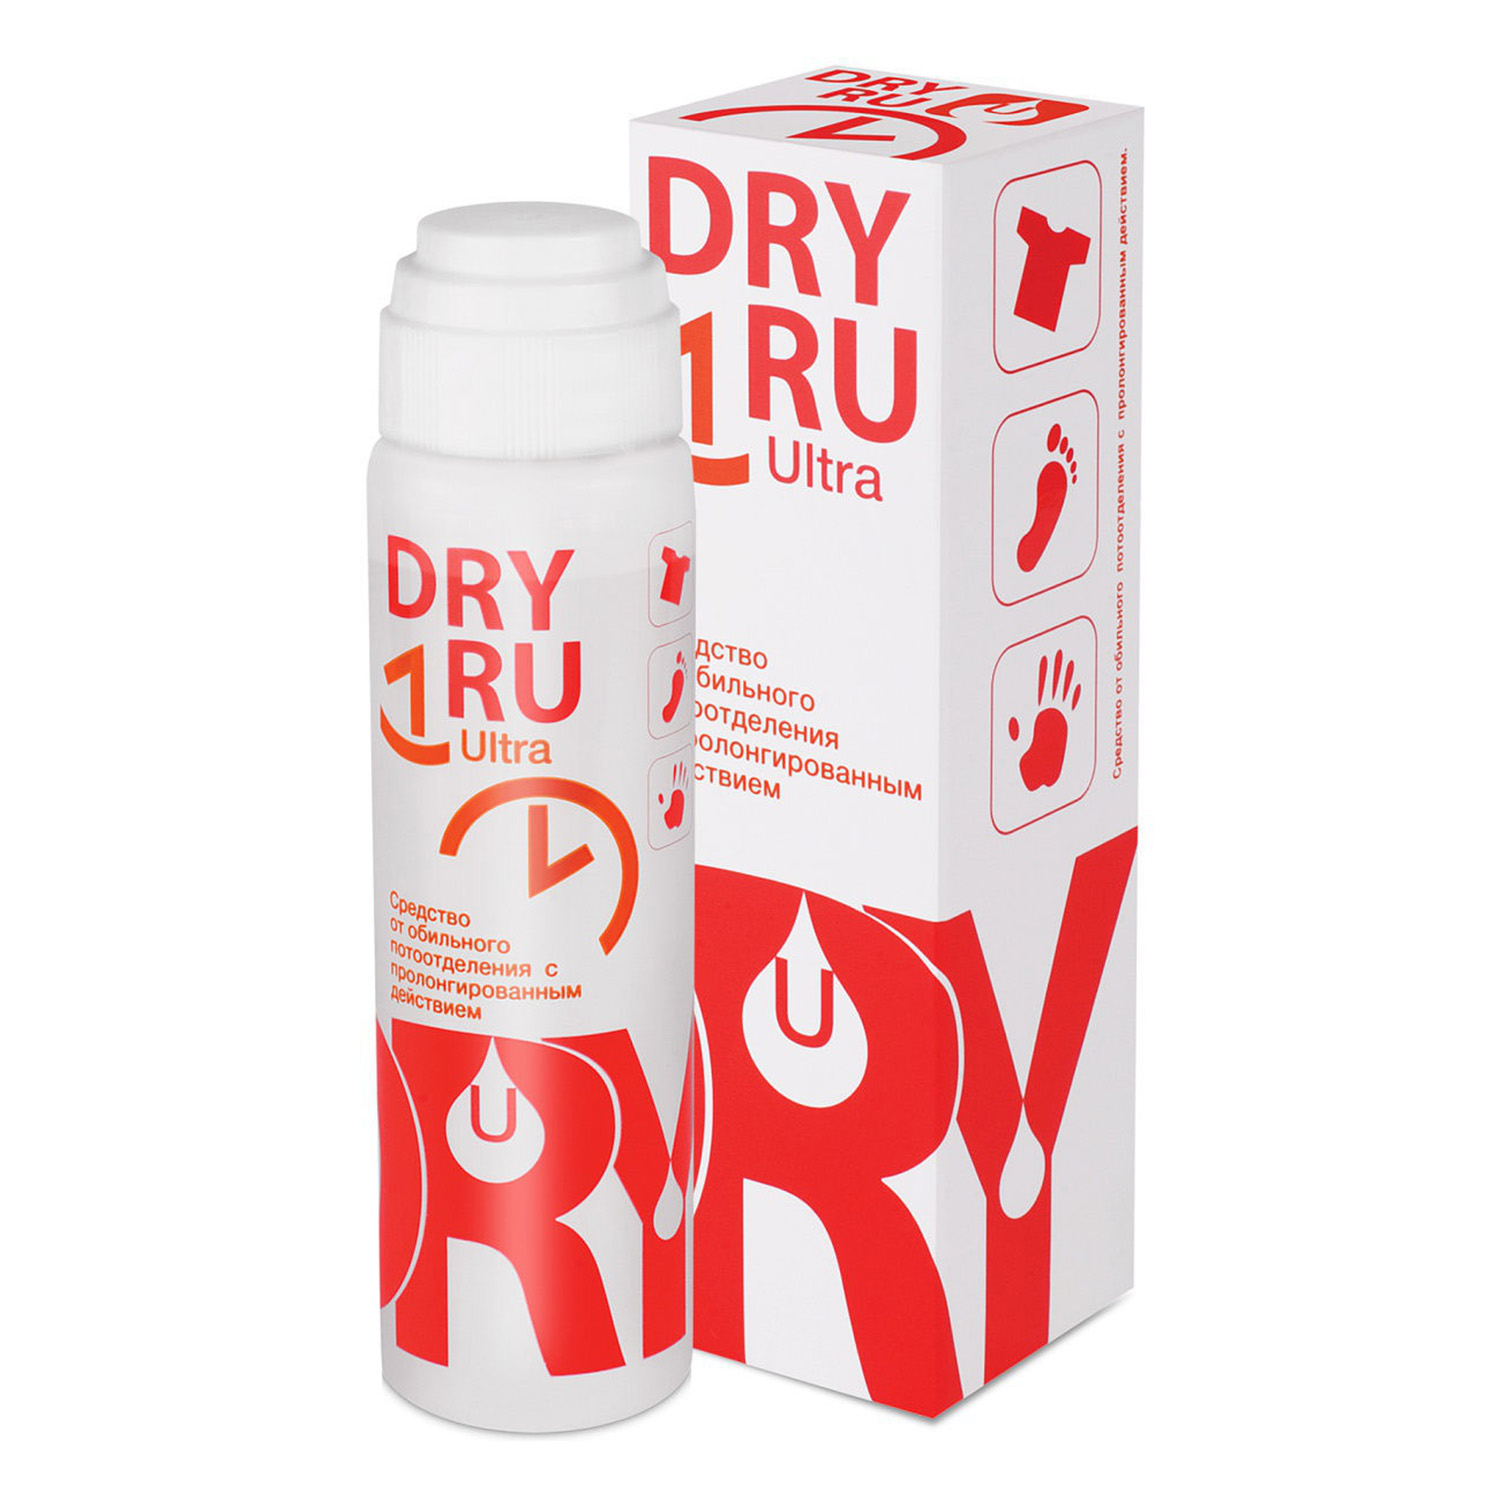 Дезодорант Dry RU Ultra с пролонгированным действием 50мл - фото 1